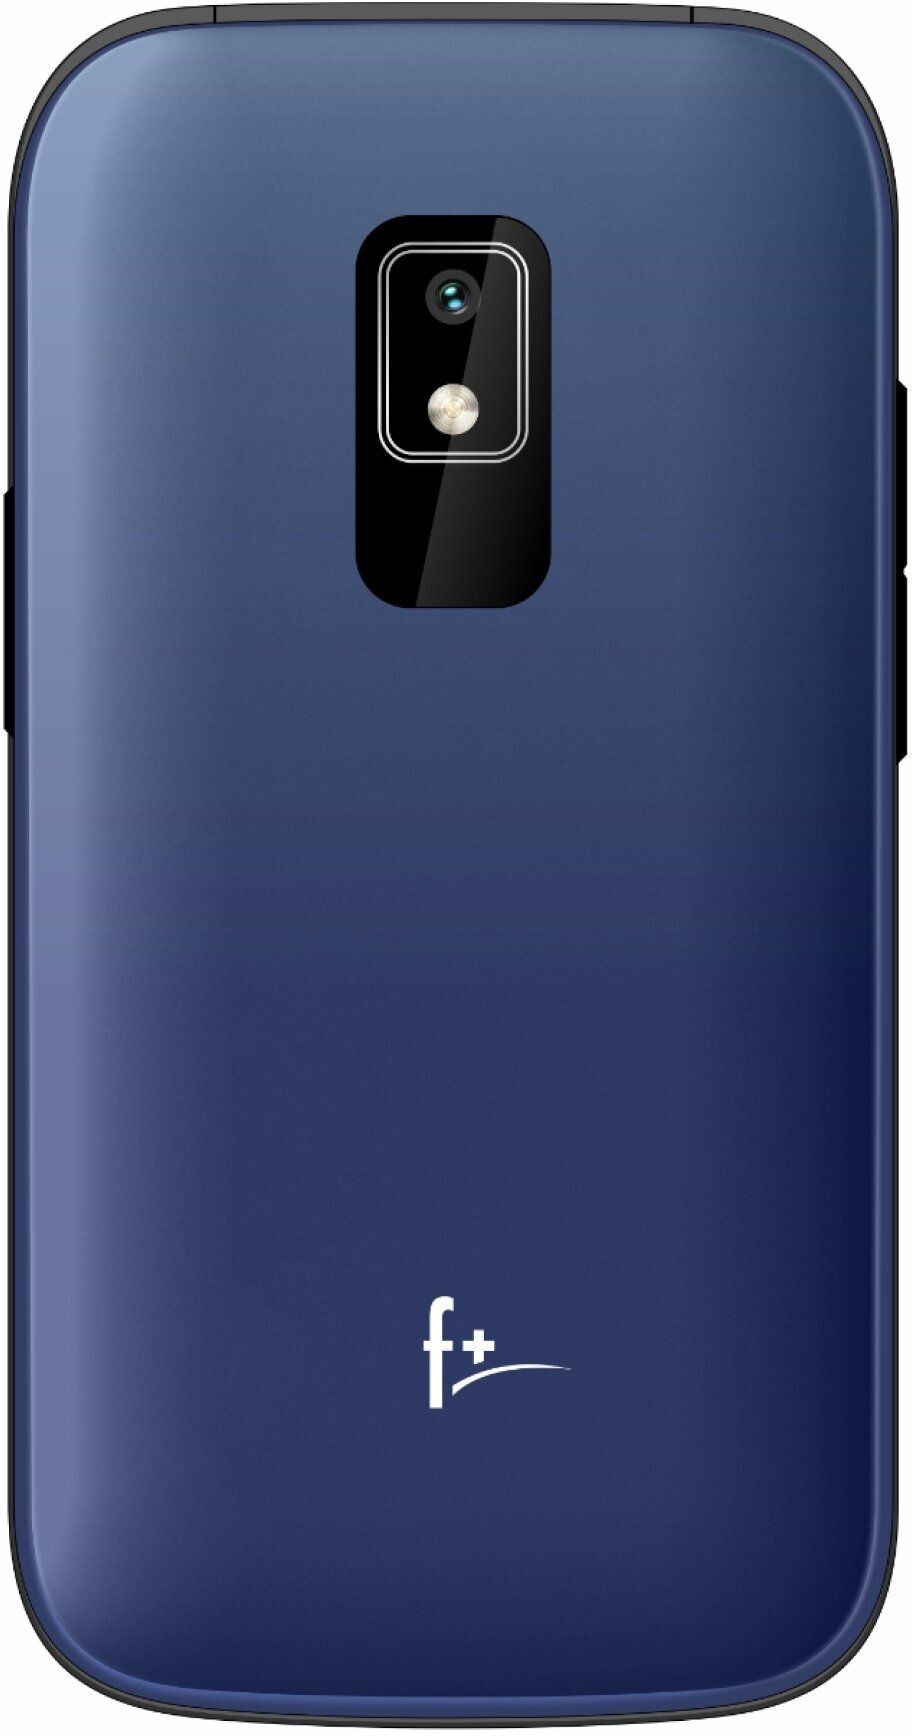 Мобильный телефон F+ Flip 280 Blue телефон f f170l light blue